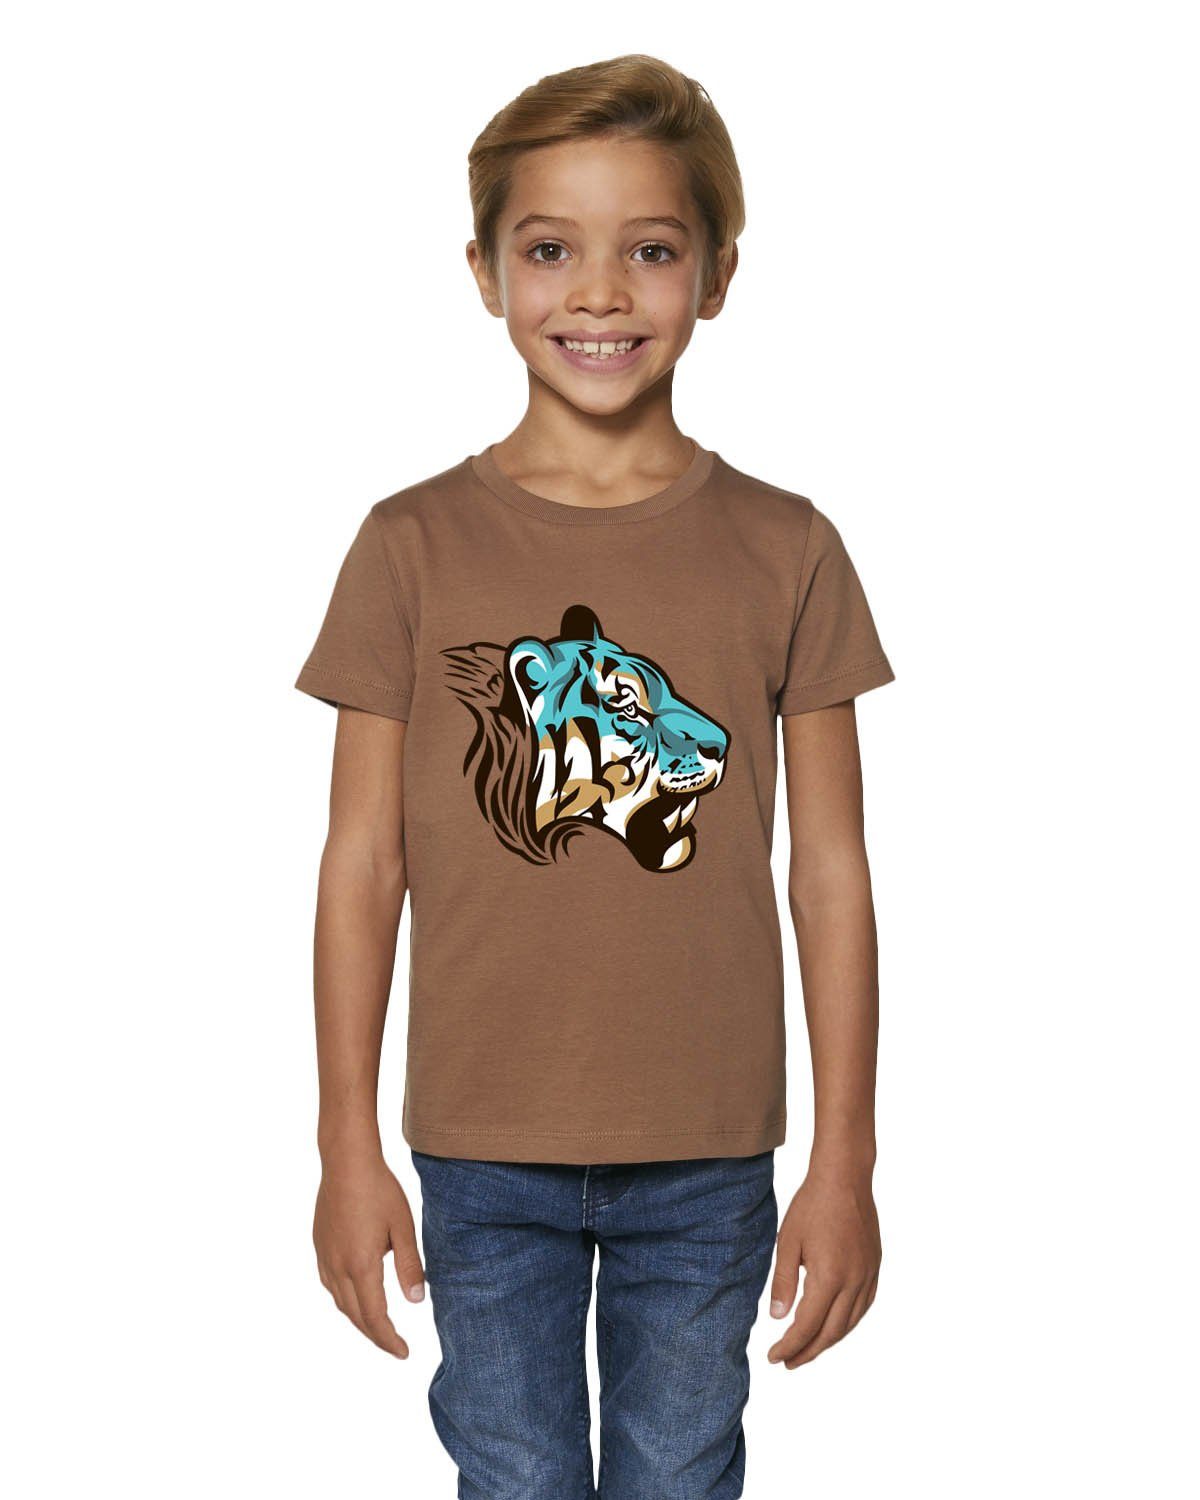 Hilltop Print-Shirt Hochwertiges Kinder T-Shirt mit Tiger, 100% Bio  Baumwolle